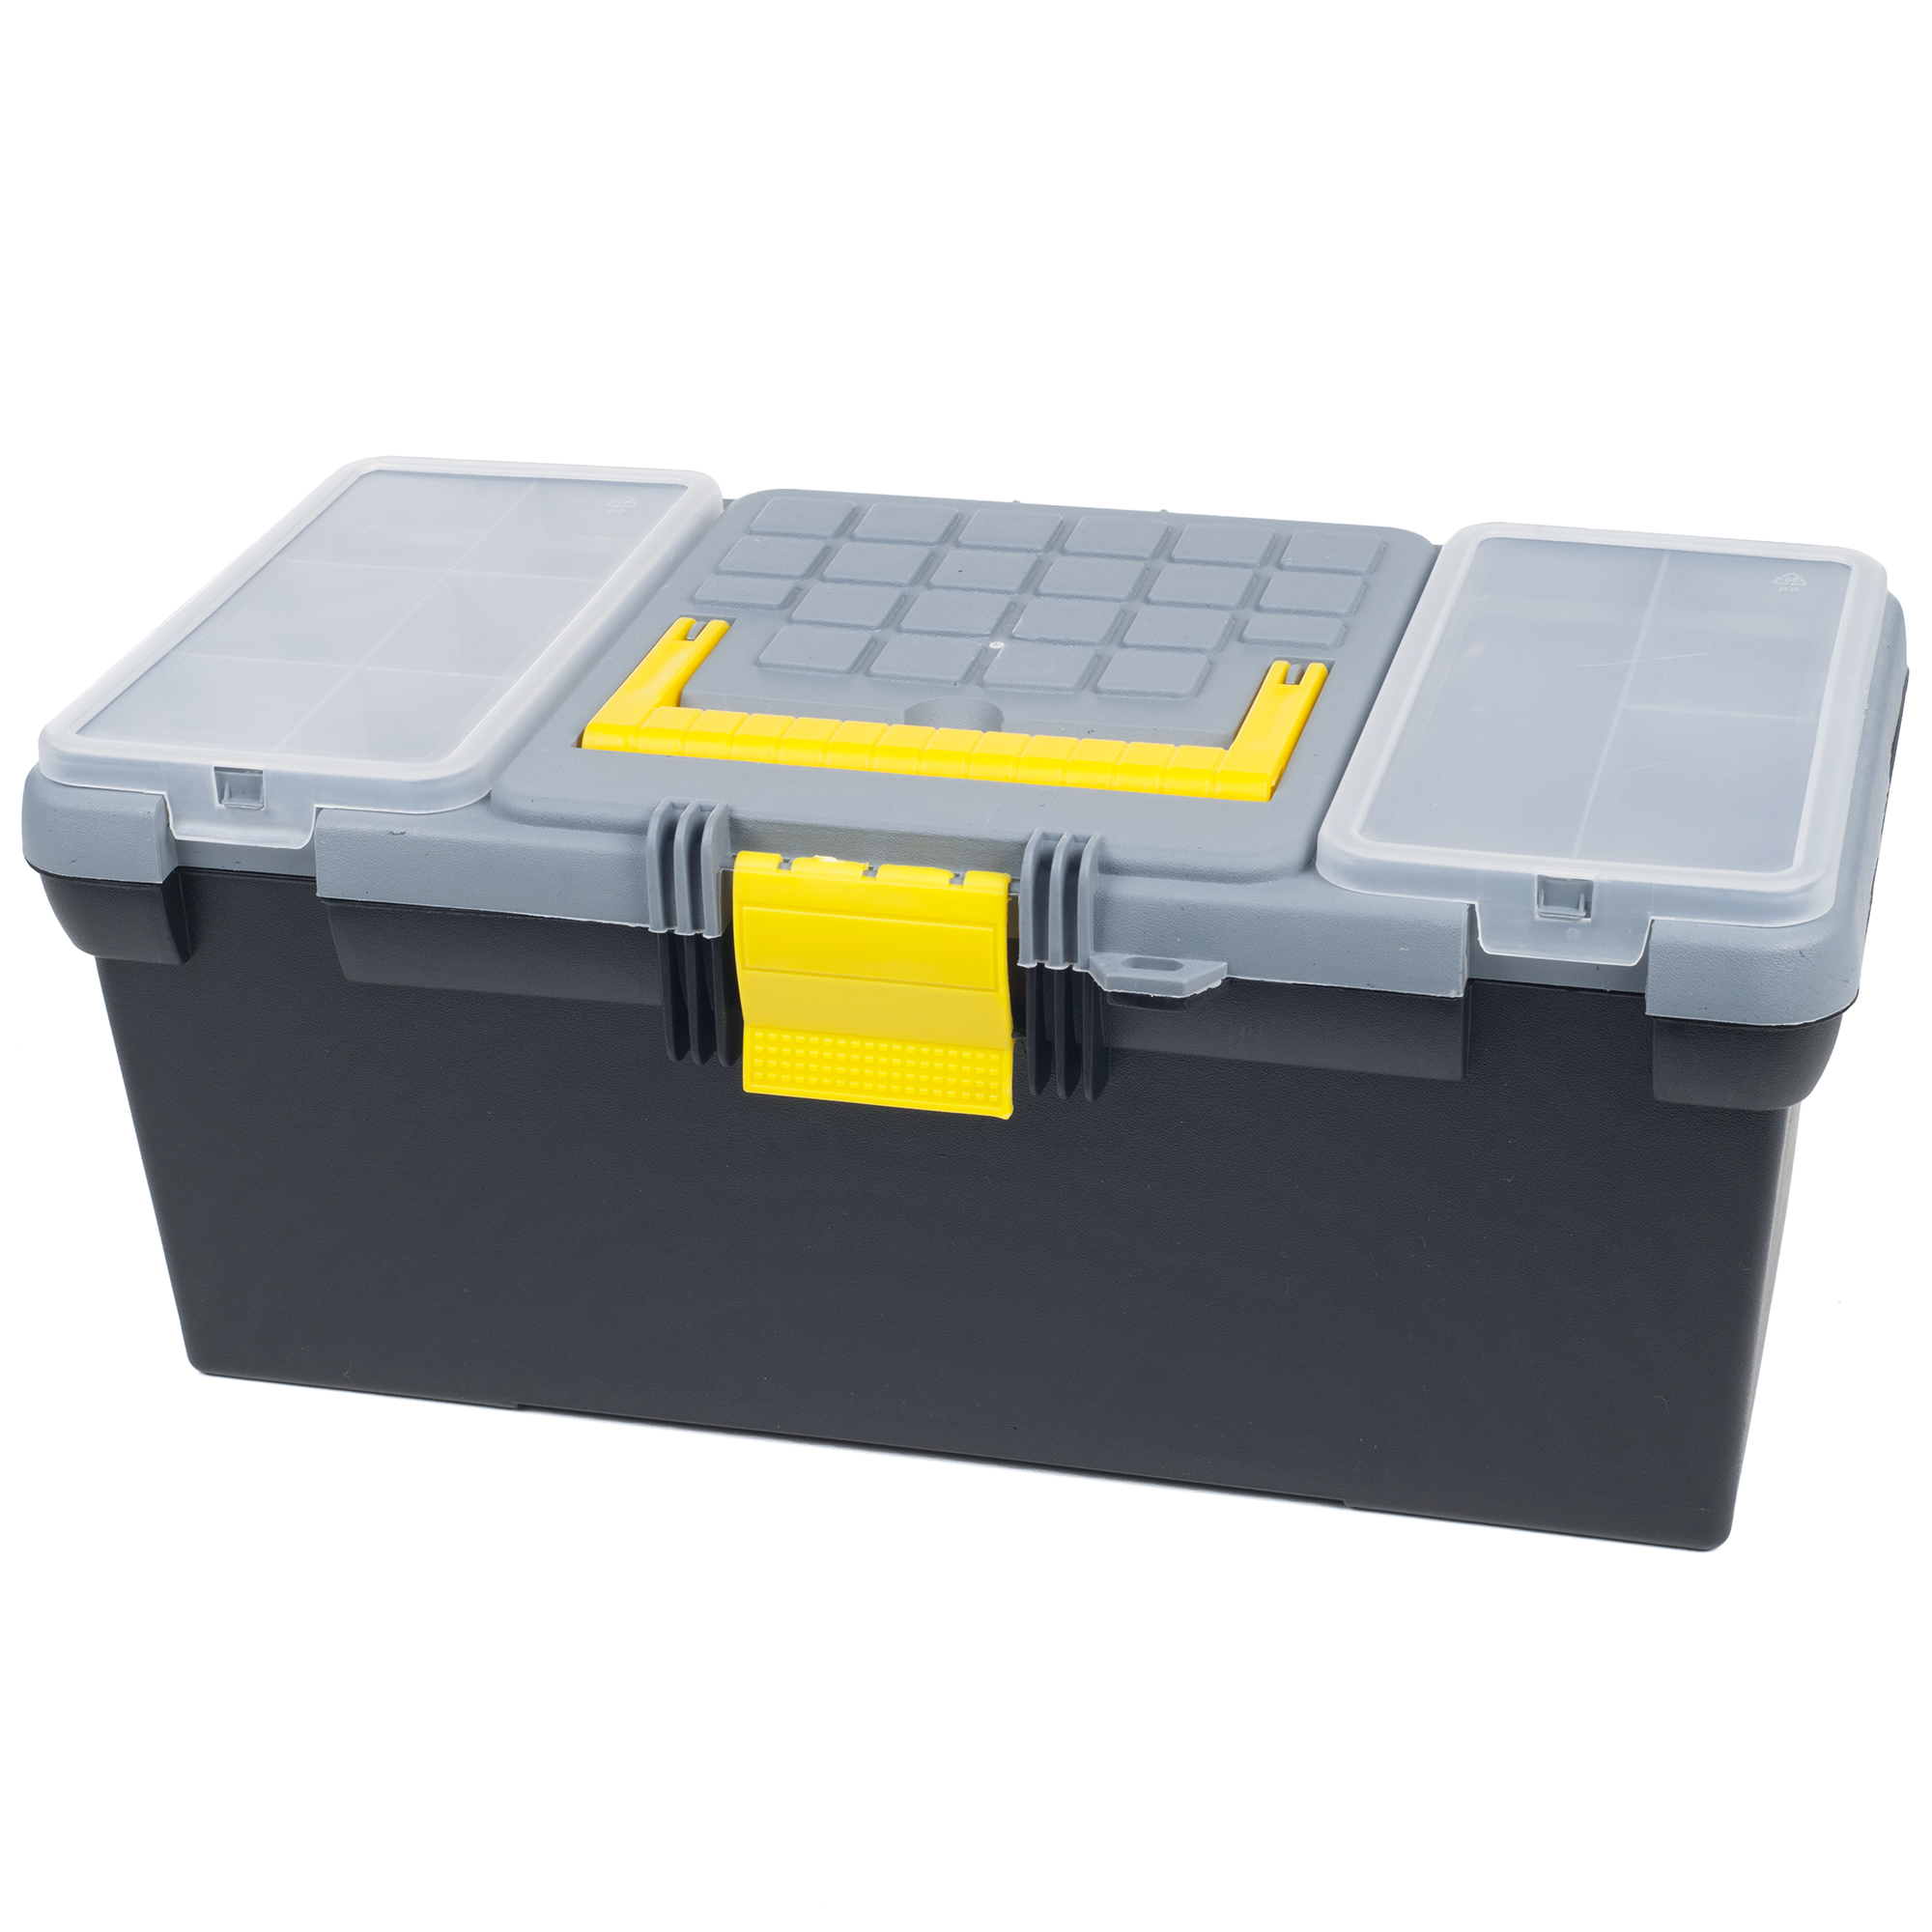 Stalwart Parts & Crafts 3-in-1 Tool Box Storage Set - Free Shipping